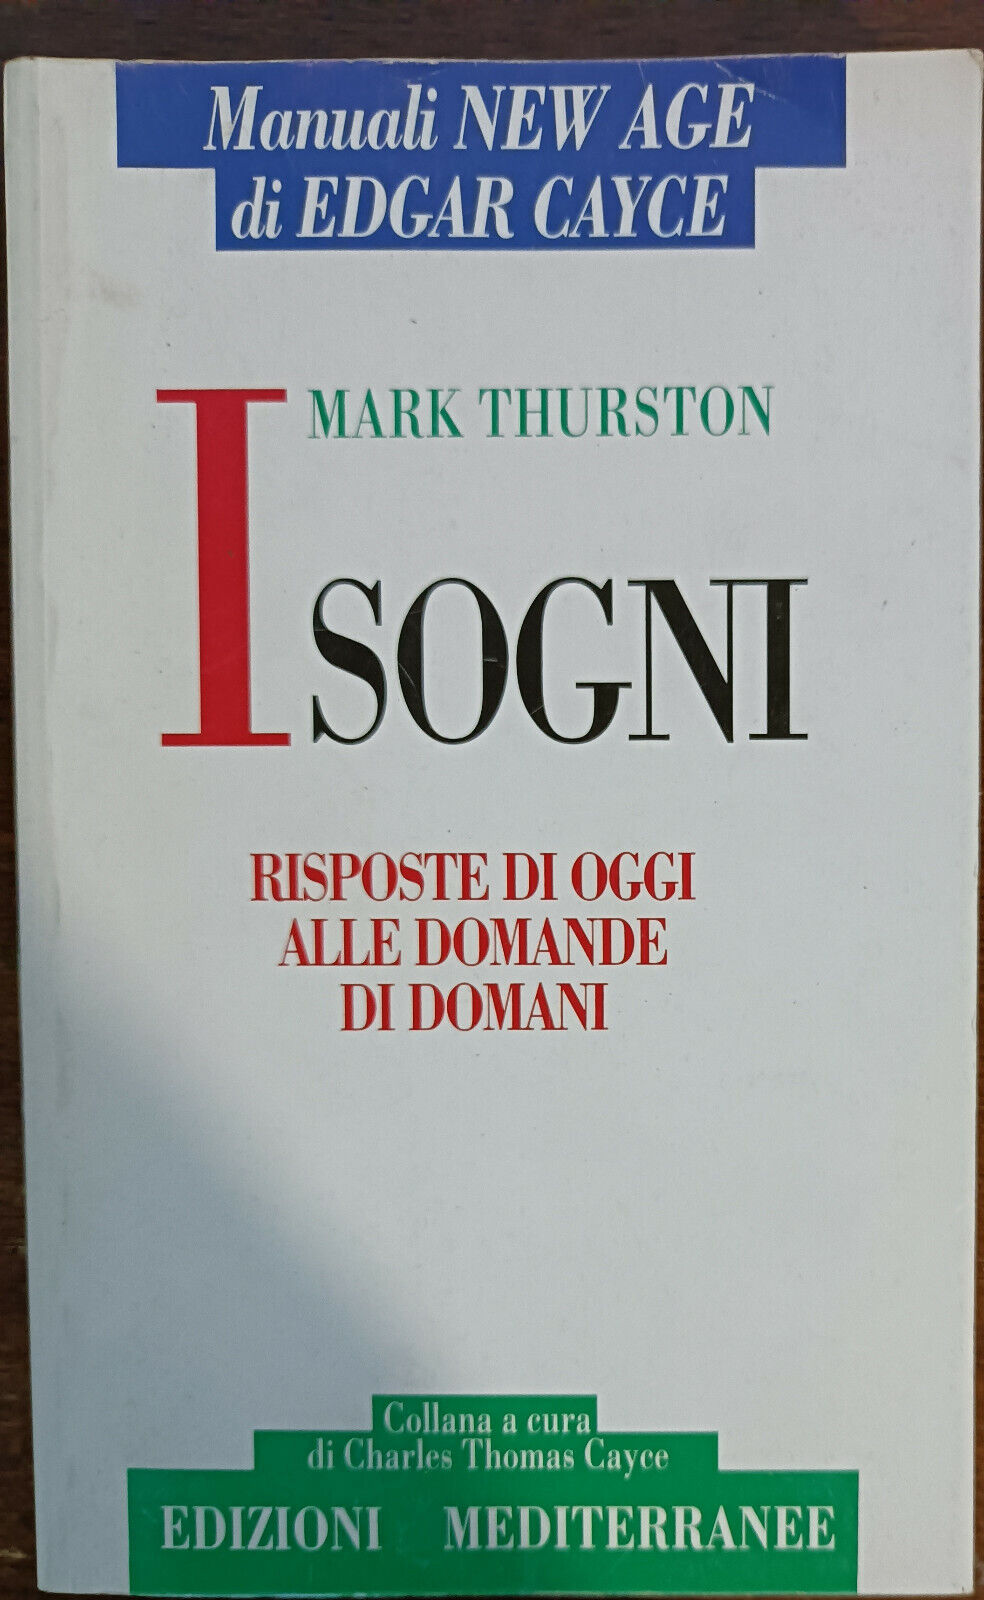 I Sogni - Edgar Cayce, Mark Thurston - Edizioni Mediterranee, 1994 - A libro usato